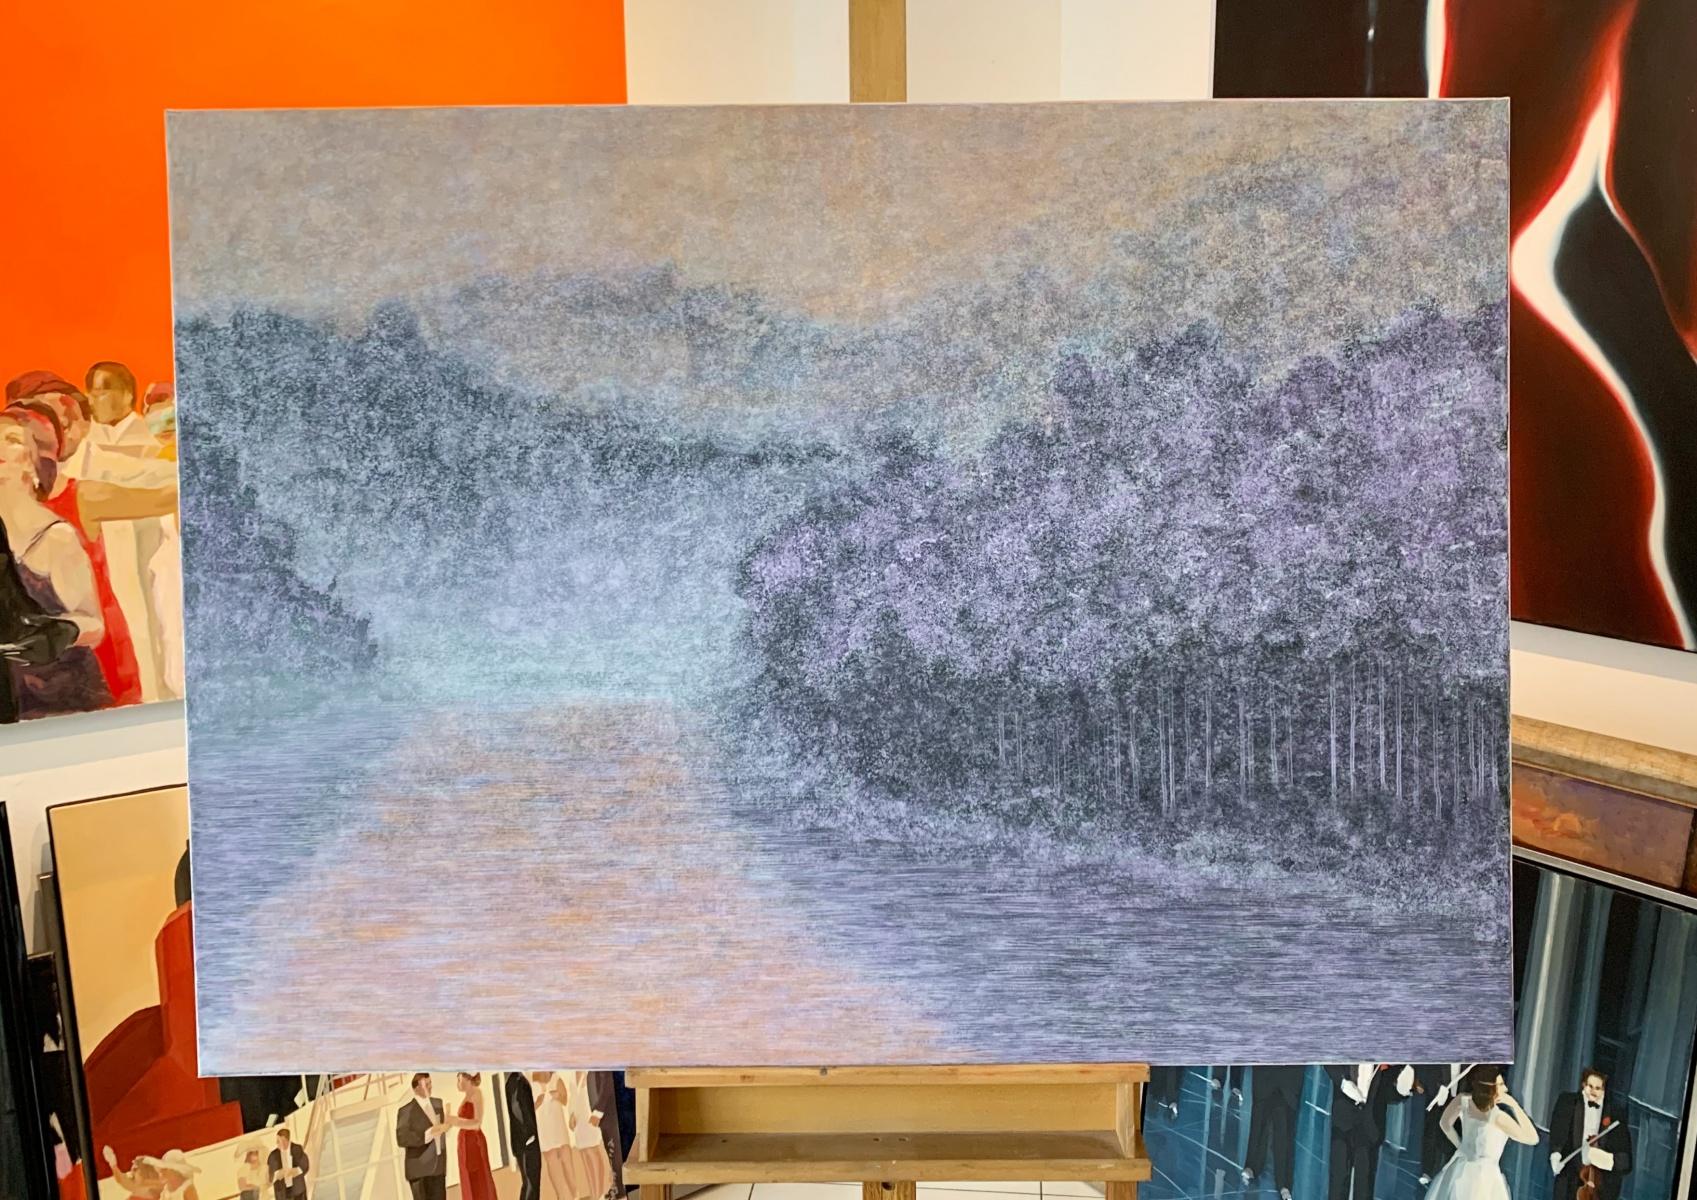 Melting of horizon - Acrylics Painting, Landscape & Abstract painting, Purple - Gray Landscape Painting by Tomek Mistak